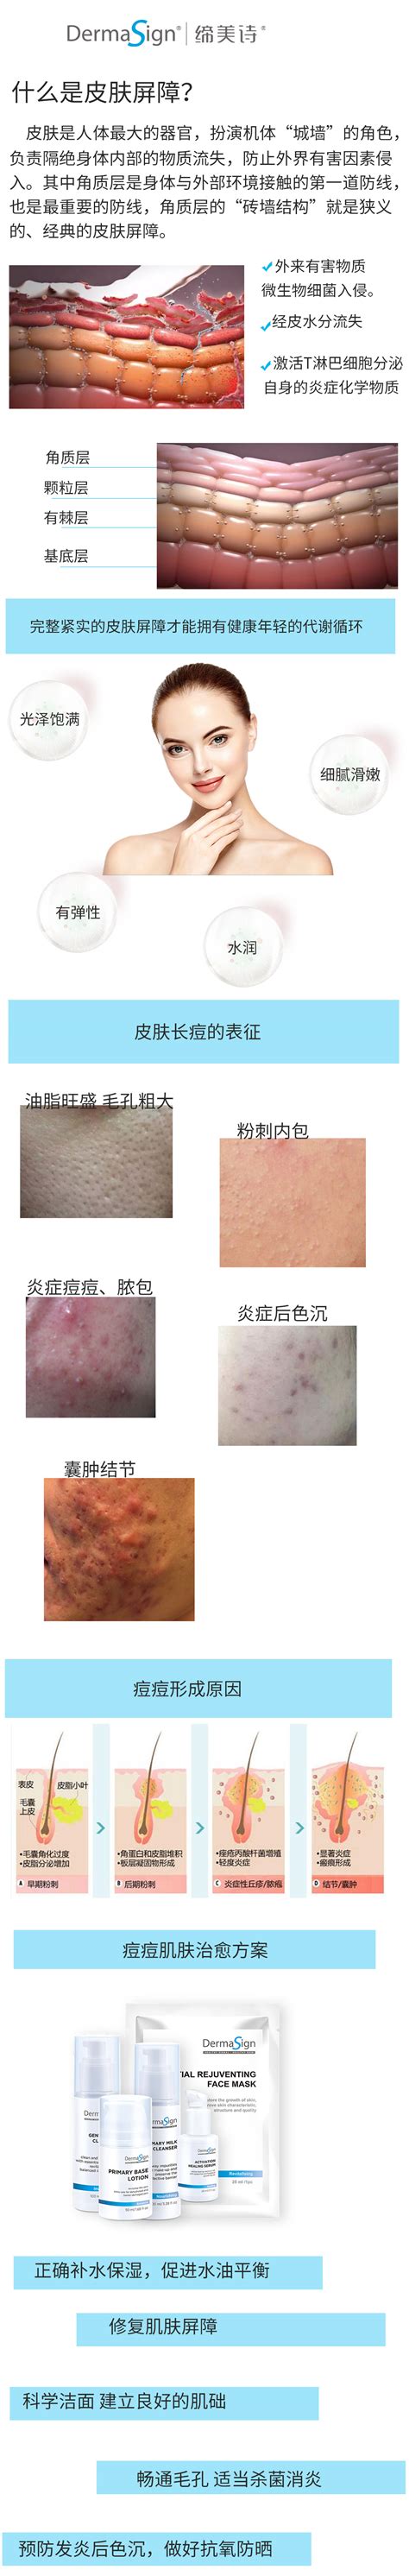 医学护肤品牌Dr.DennisGross正式登陆中国_TOM资讯